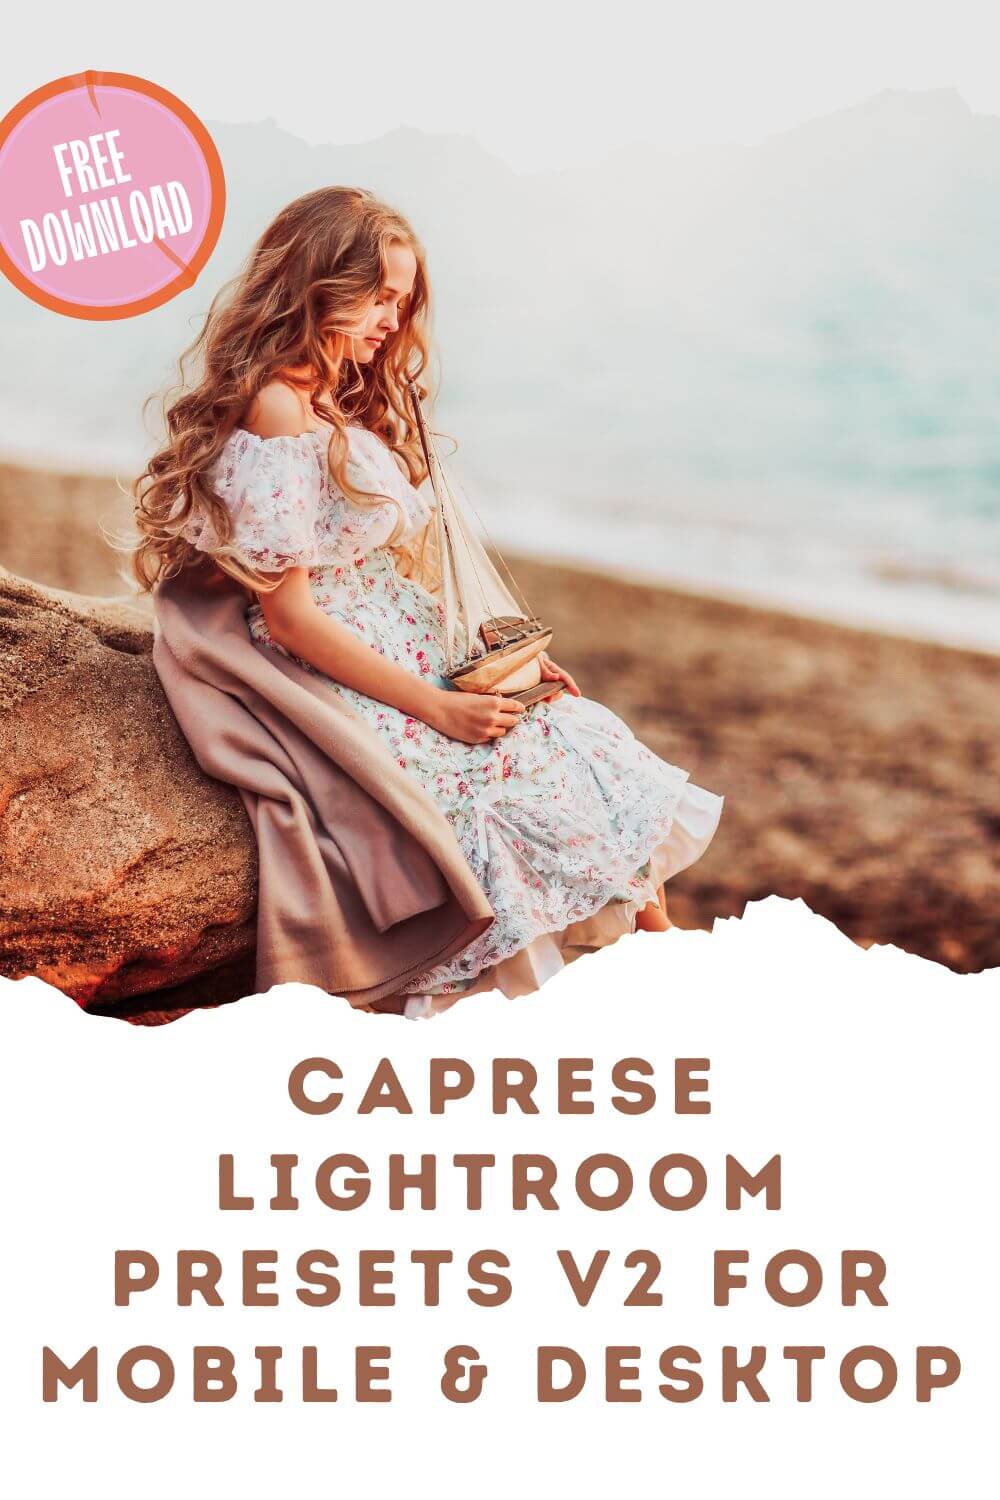 Caprese Lightroom Presets V2 For Mobile & Desktop